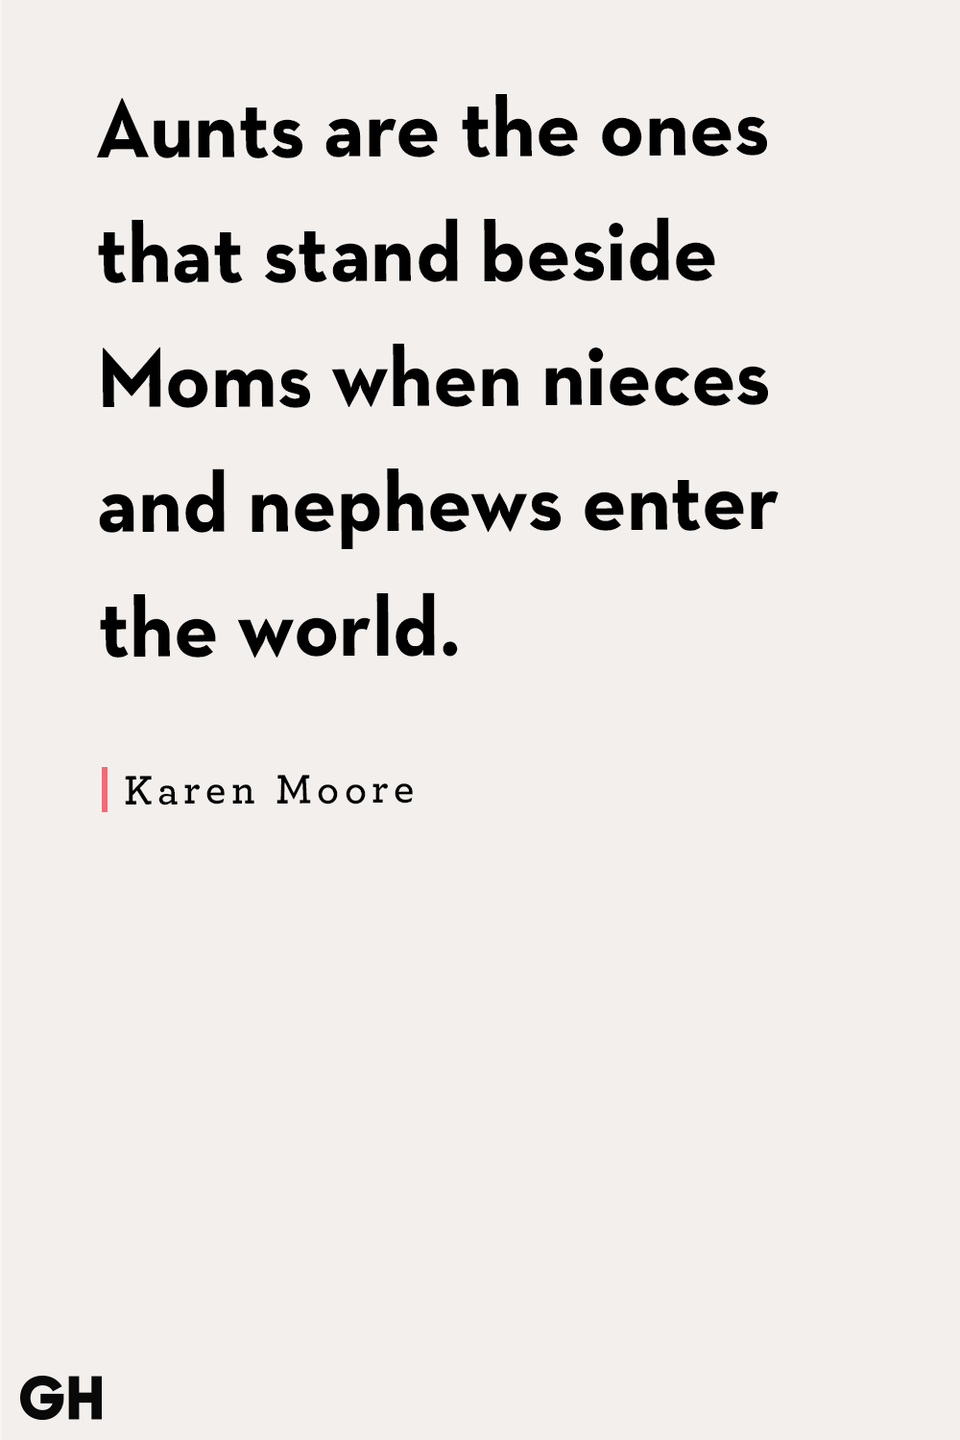 Karen Moore